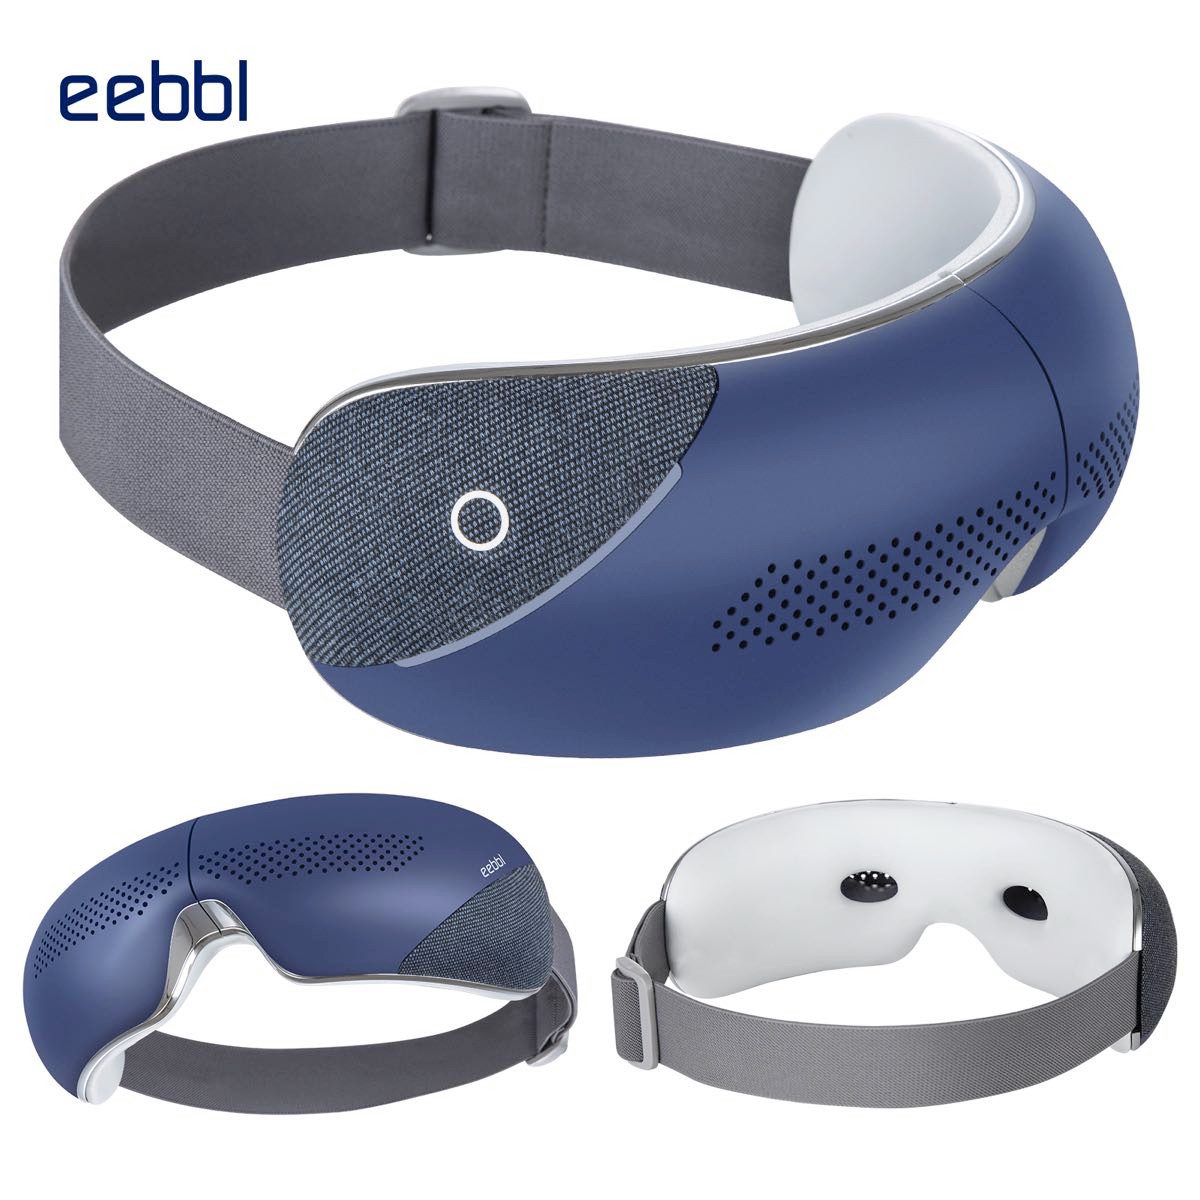 eebbl Gesichtsmassagegerät Augenmassagegerät Massagebrille ST-200 Blau mit Sichtfenster, 5 Massagemodi, mit Wärme ~40-42°C Vibration Bluetooth